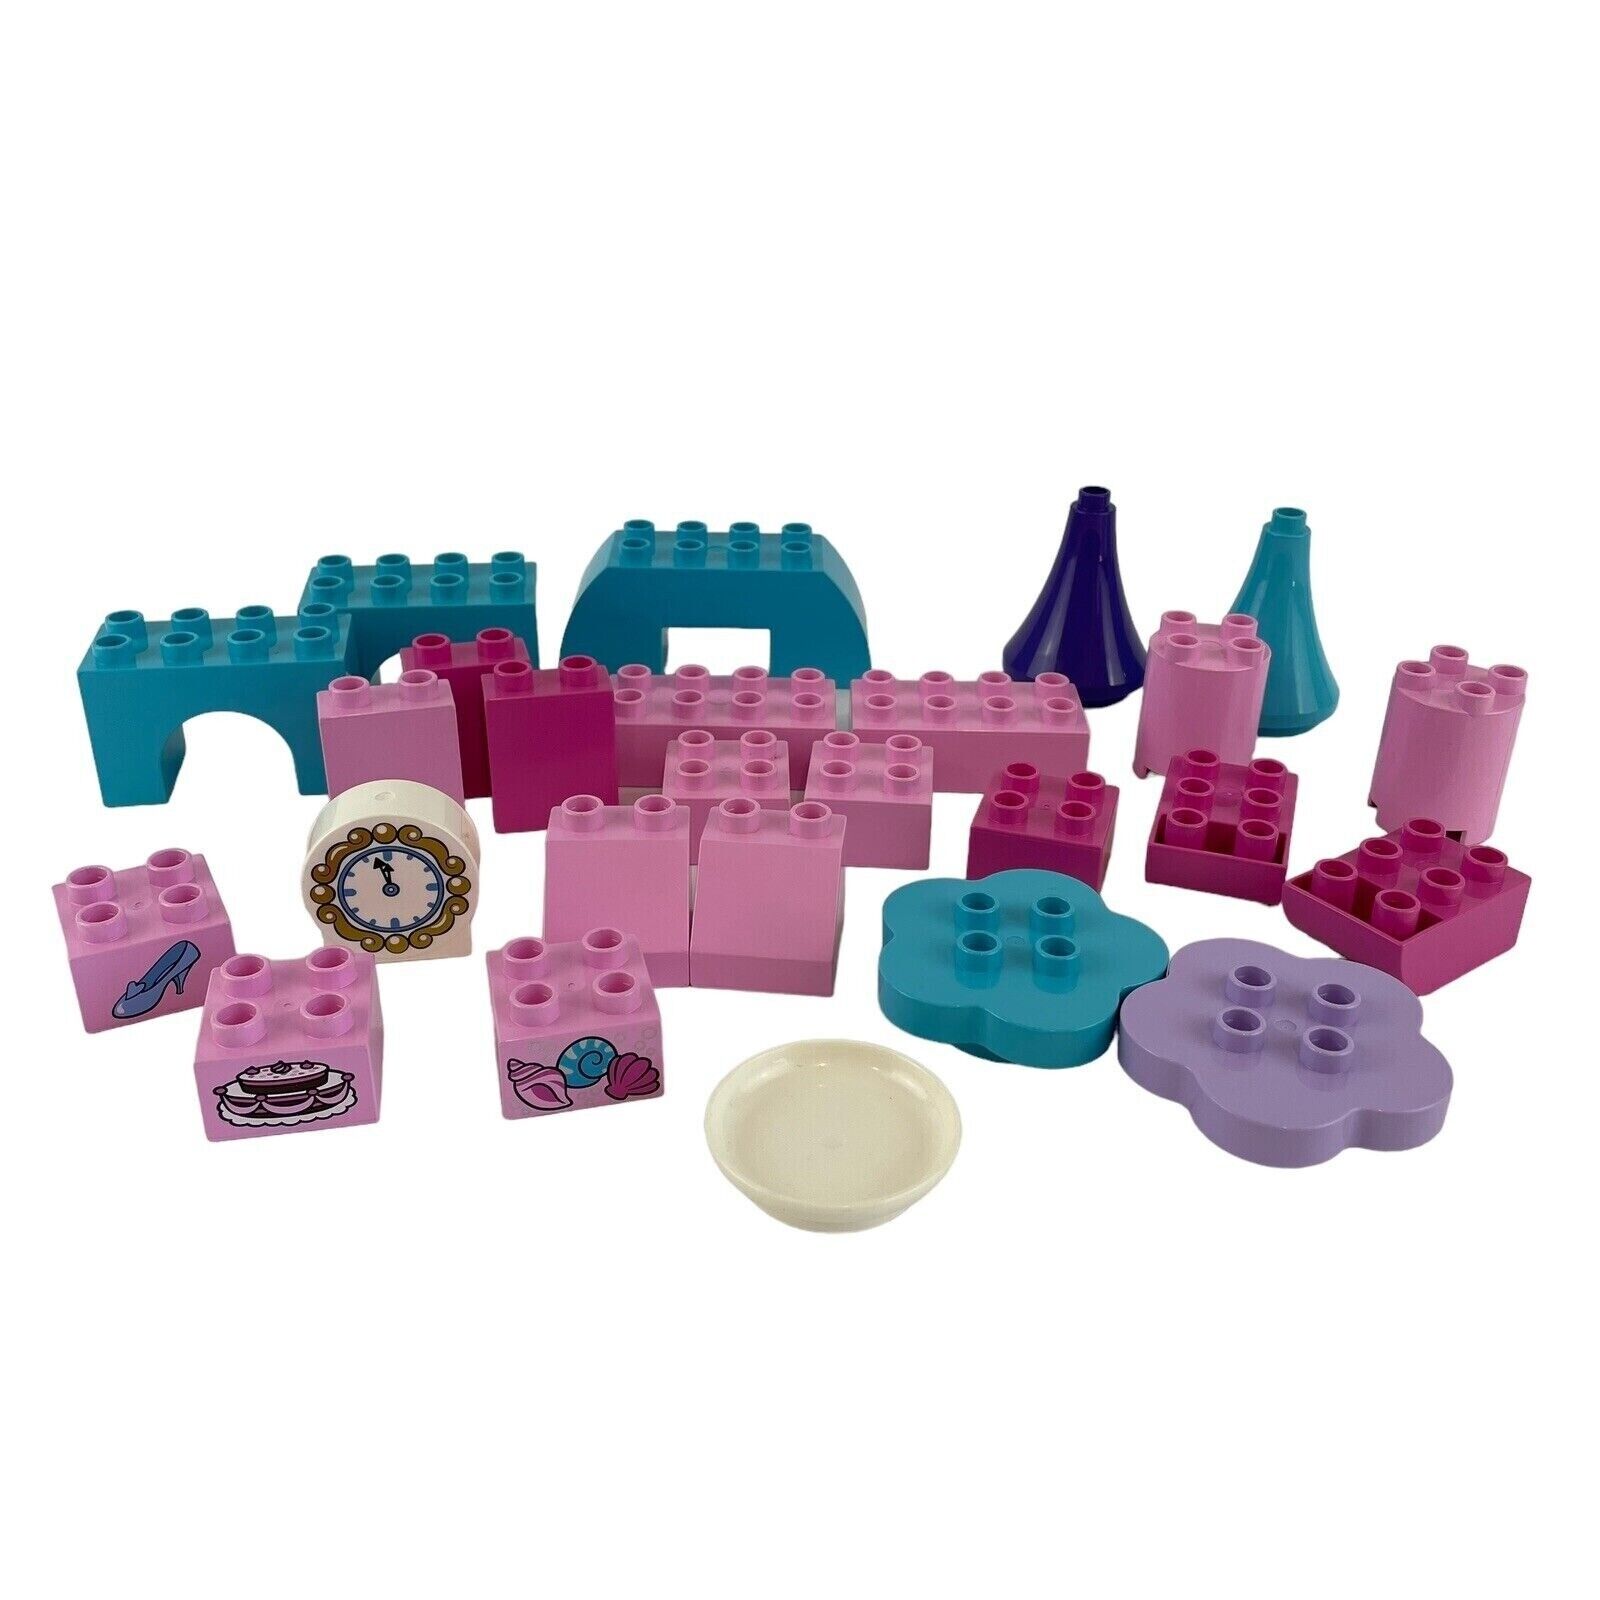 Lego Duplo Princess Castle Replacement Parts Pink Blue Purple  Lot of 26